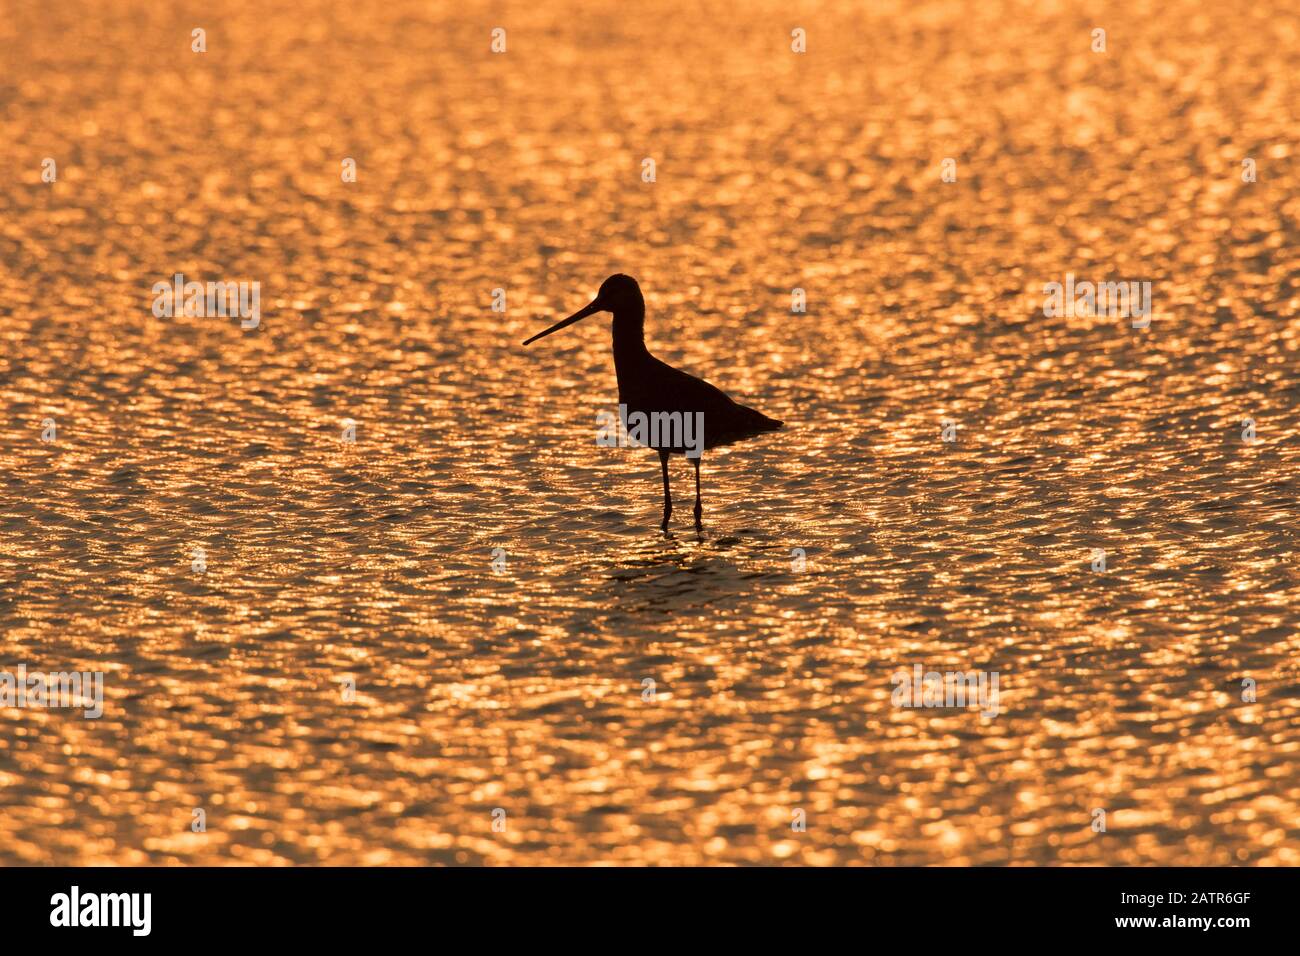 Silhouette de godwit à queue noire (Limosa limosa) se forant dans des eaux peu profondes au coucher du soleil Banque D'Images